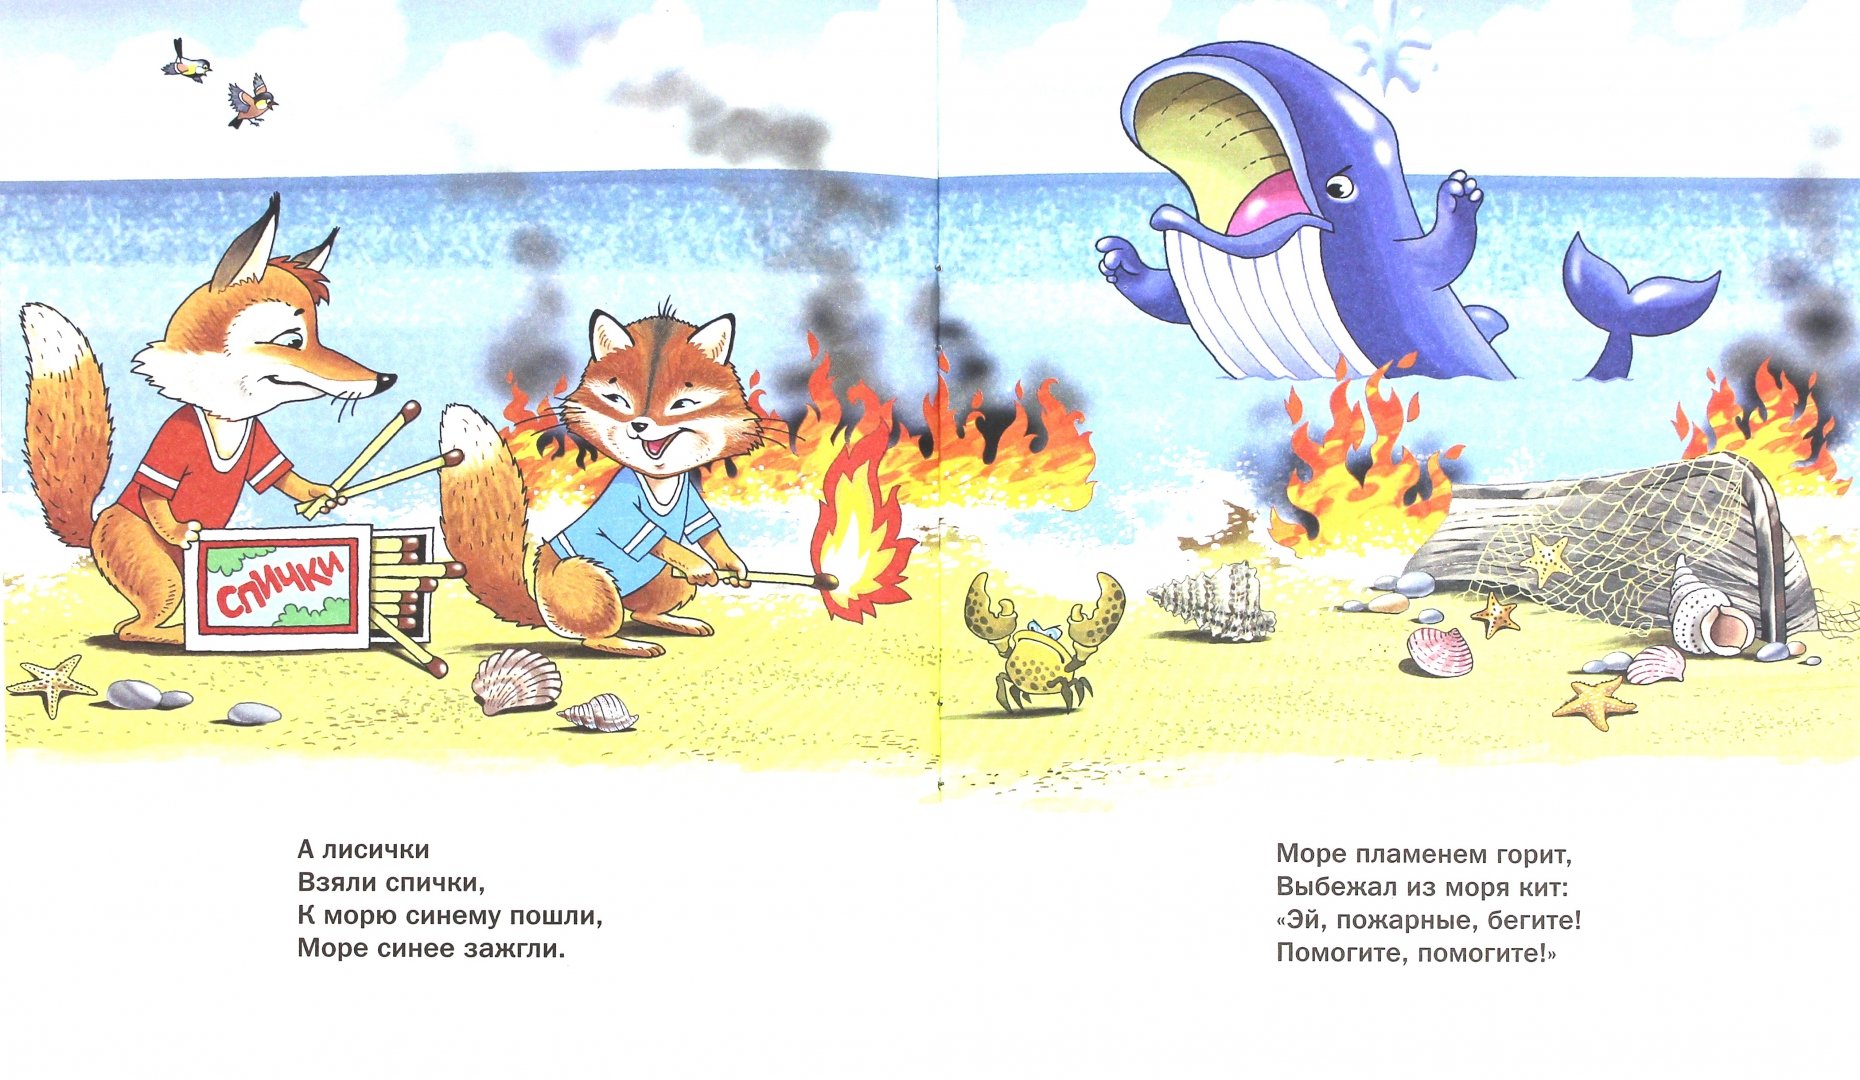 Я видел озеро в огне. Иллюстрация к сказке Чуковского "путаница" а лисички взяли спички. Иллюстрации к произведению Чуковского путаница. Лисички со спичками Чуковский.